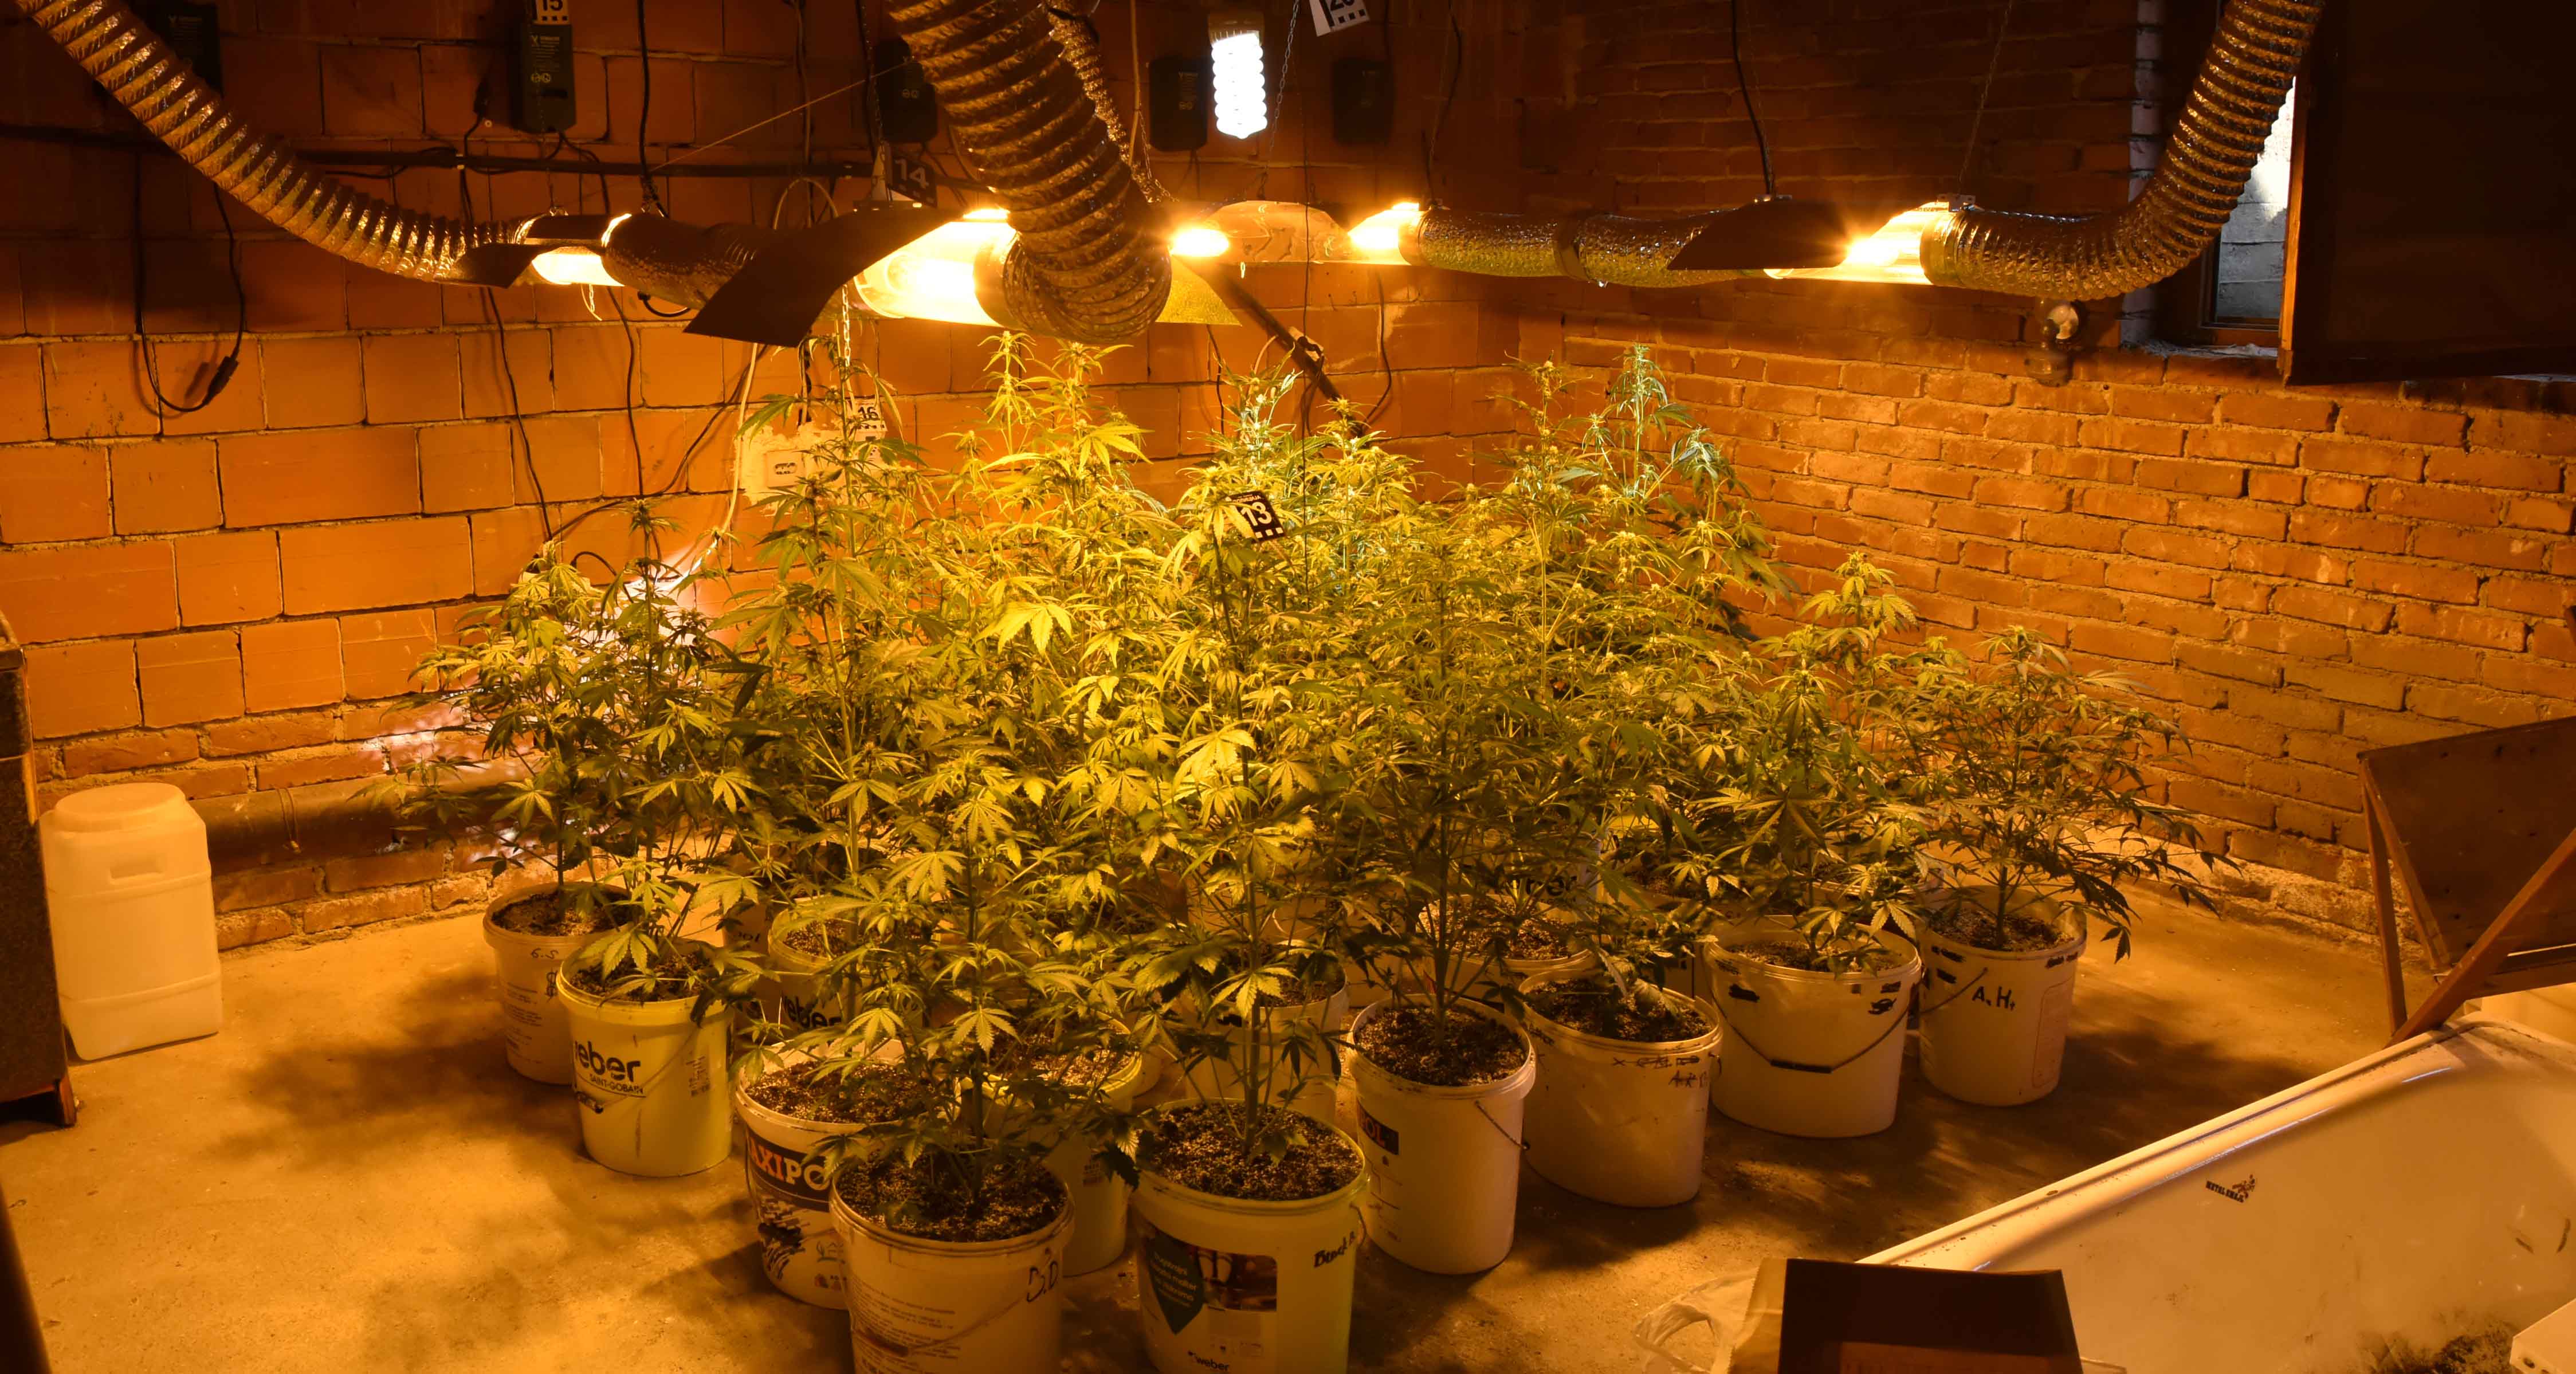 Otkrivena laboratoriju za uzgoj marihuane, uhapšene dve osobe